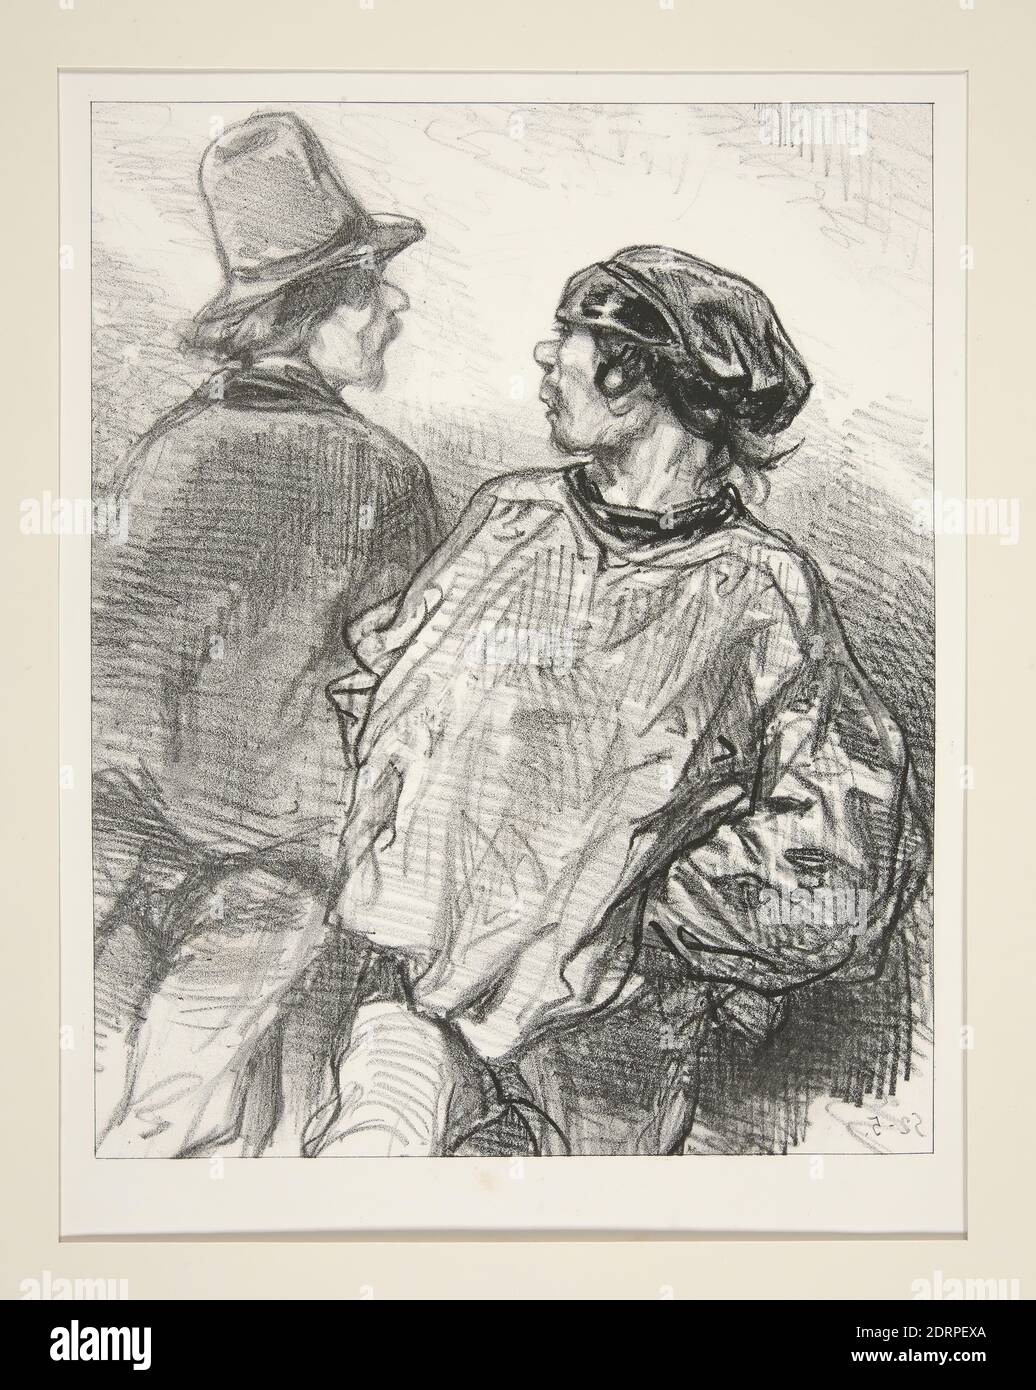 Artist: Paul Gavarni, French, 1804–1866, Qu’est-ce que c’est! On n’est donc p’us des freres?, Lithograph, French, 19th century, Works on Paper - Prints Stock Photo